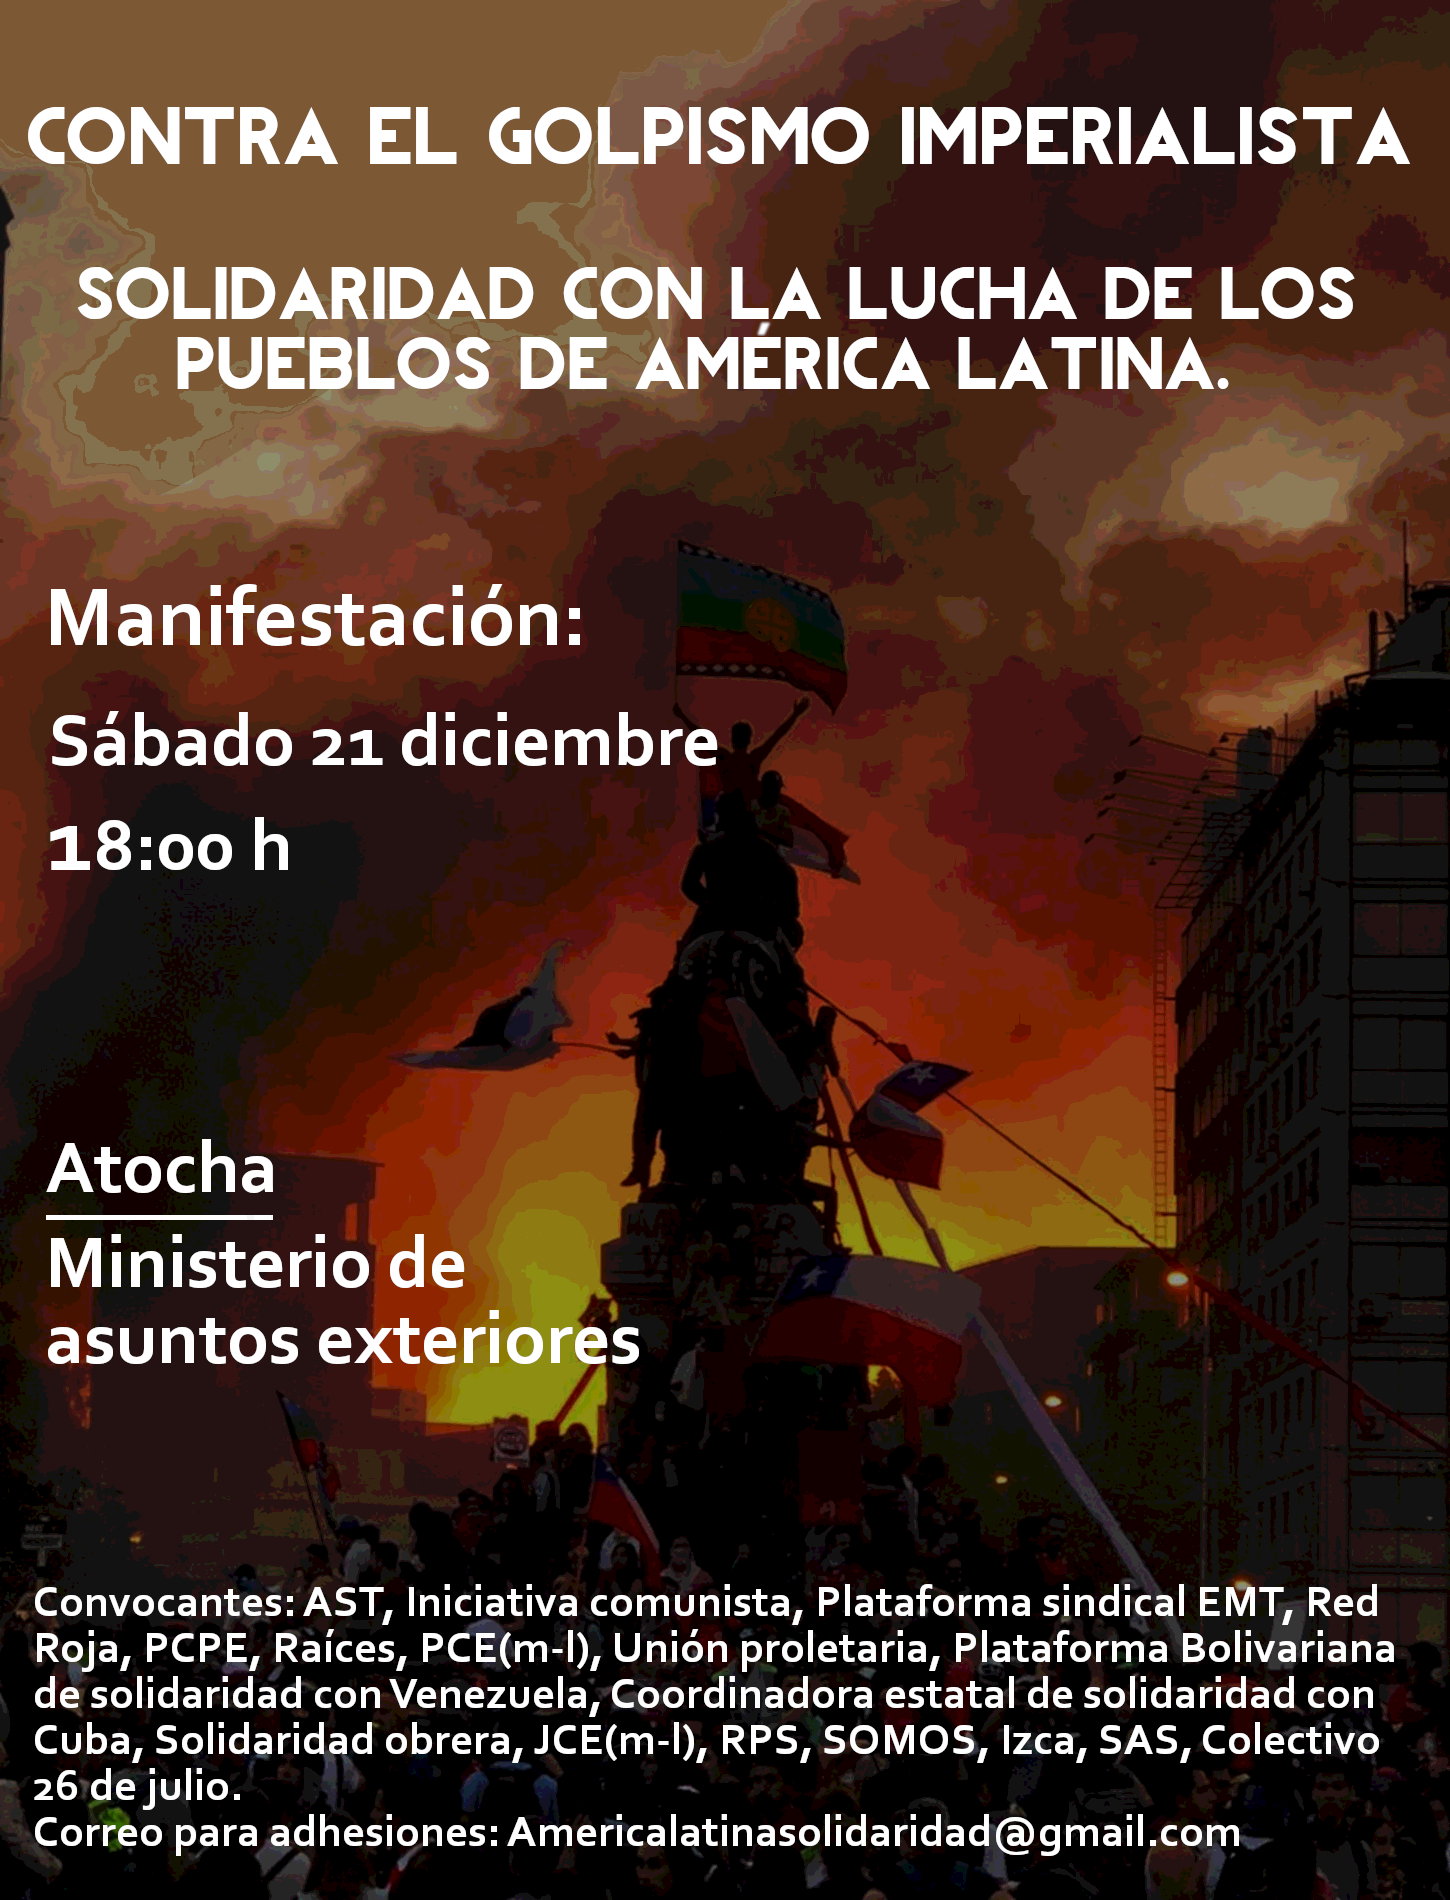 Cartel de la manifestación 'Contra el golpismo imperialista'.